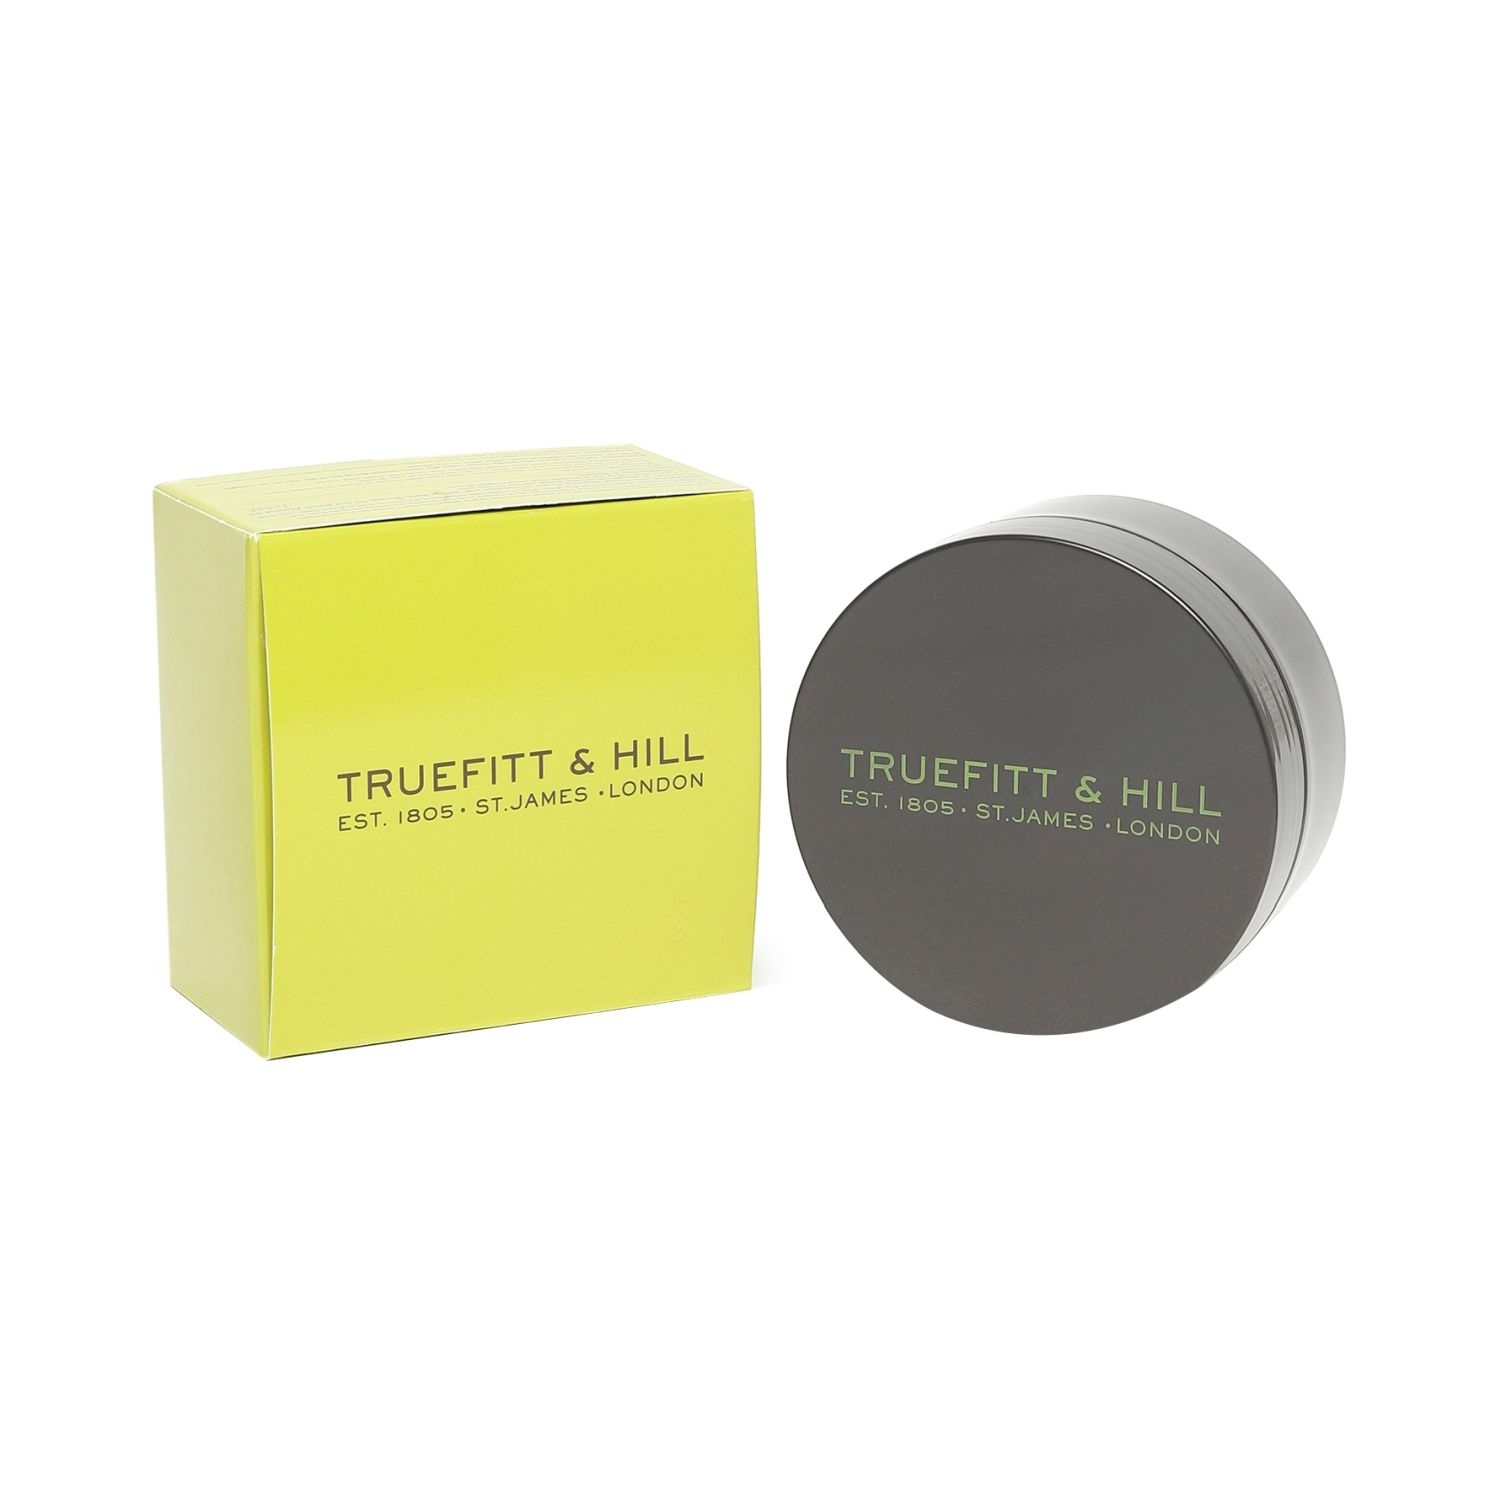 Truefitt & Hill | Truefitt & Hill Authentic No-10 Finest Shaving Cream (200g)